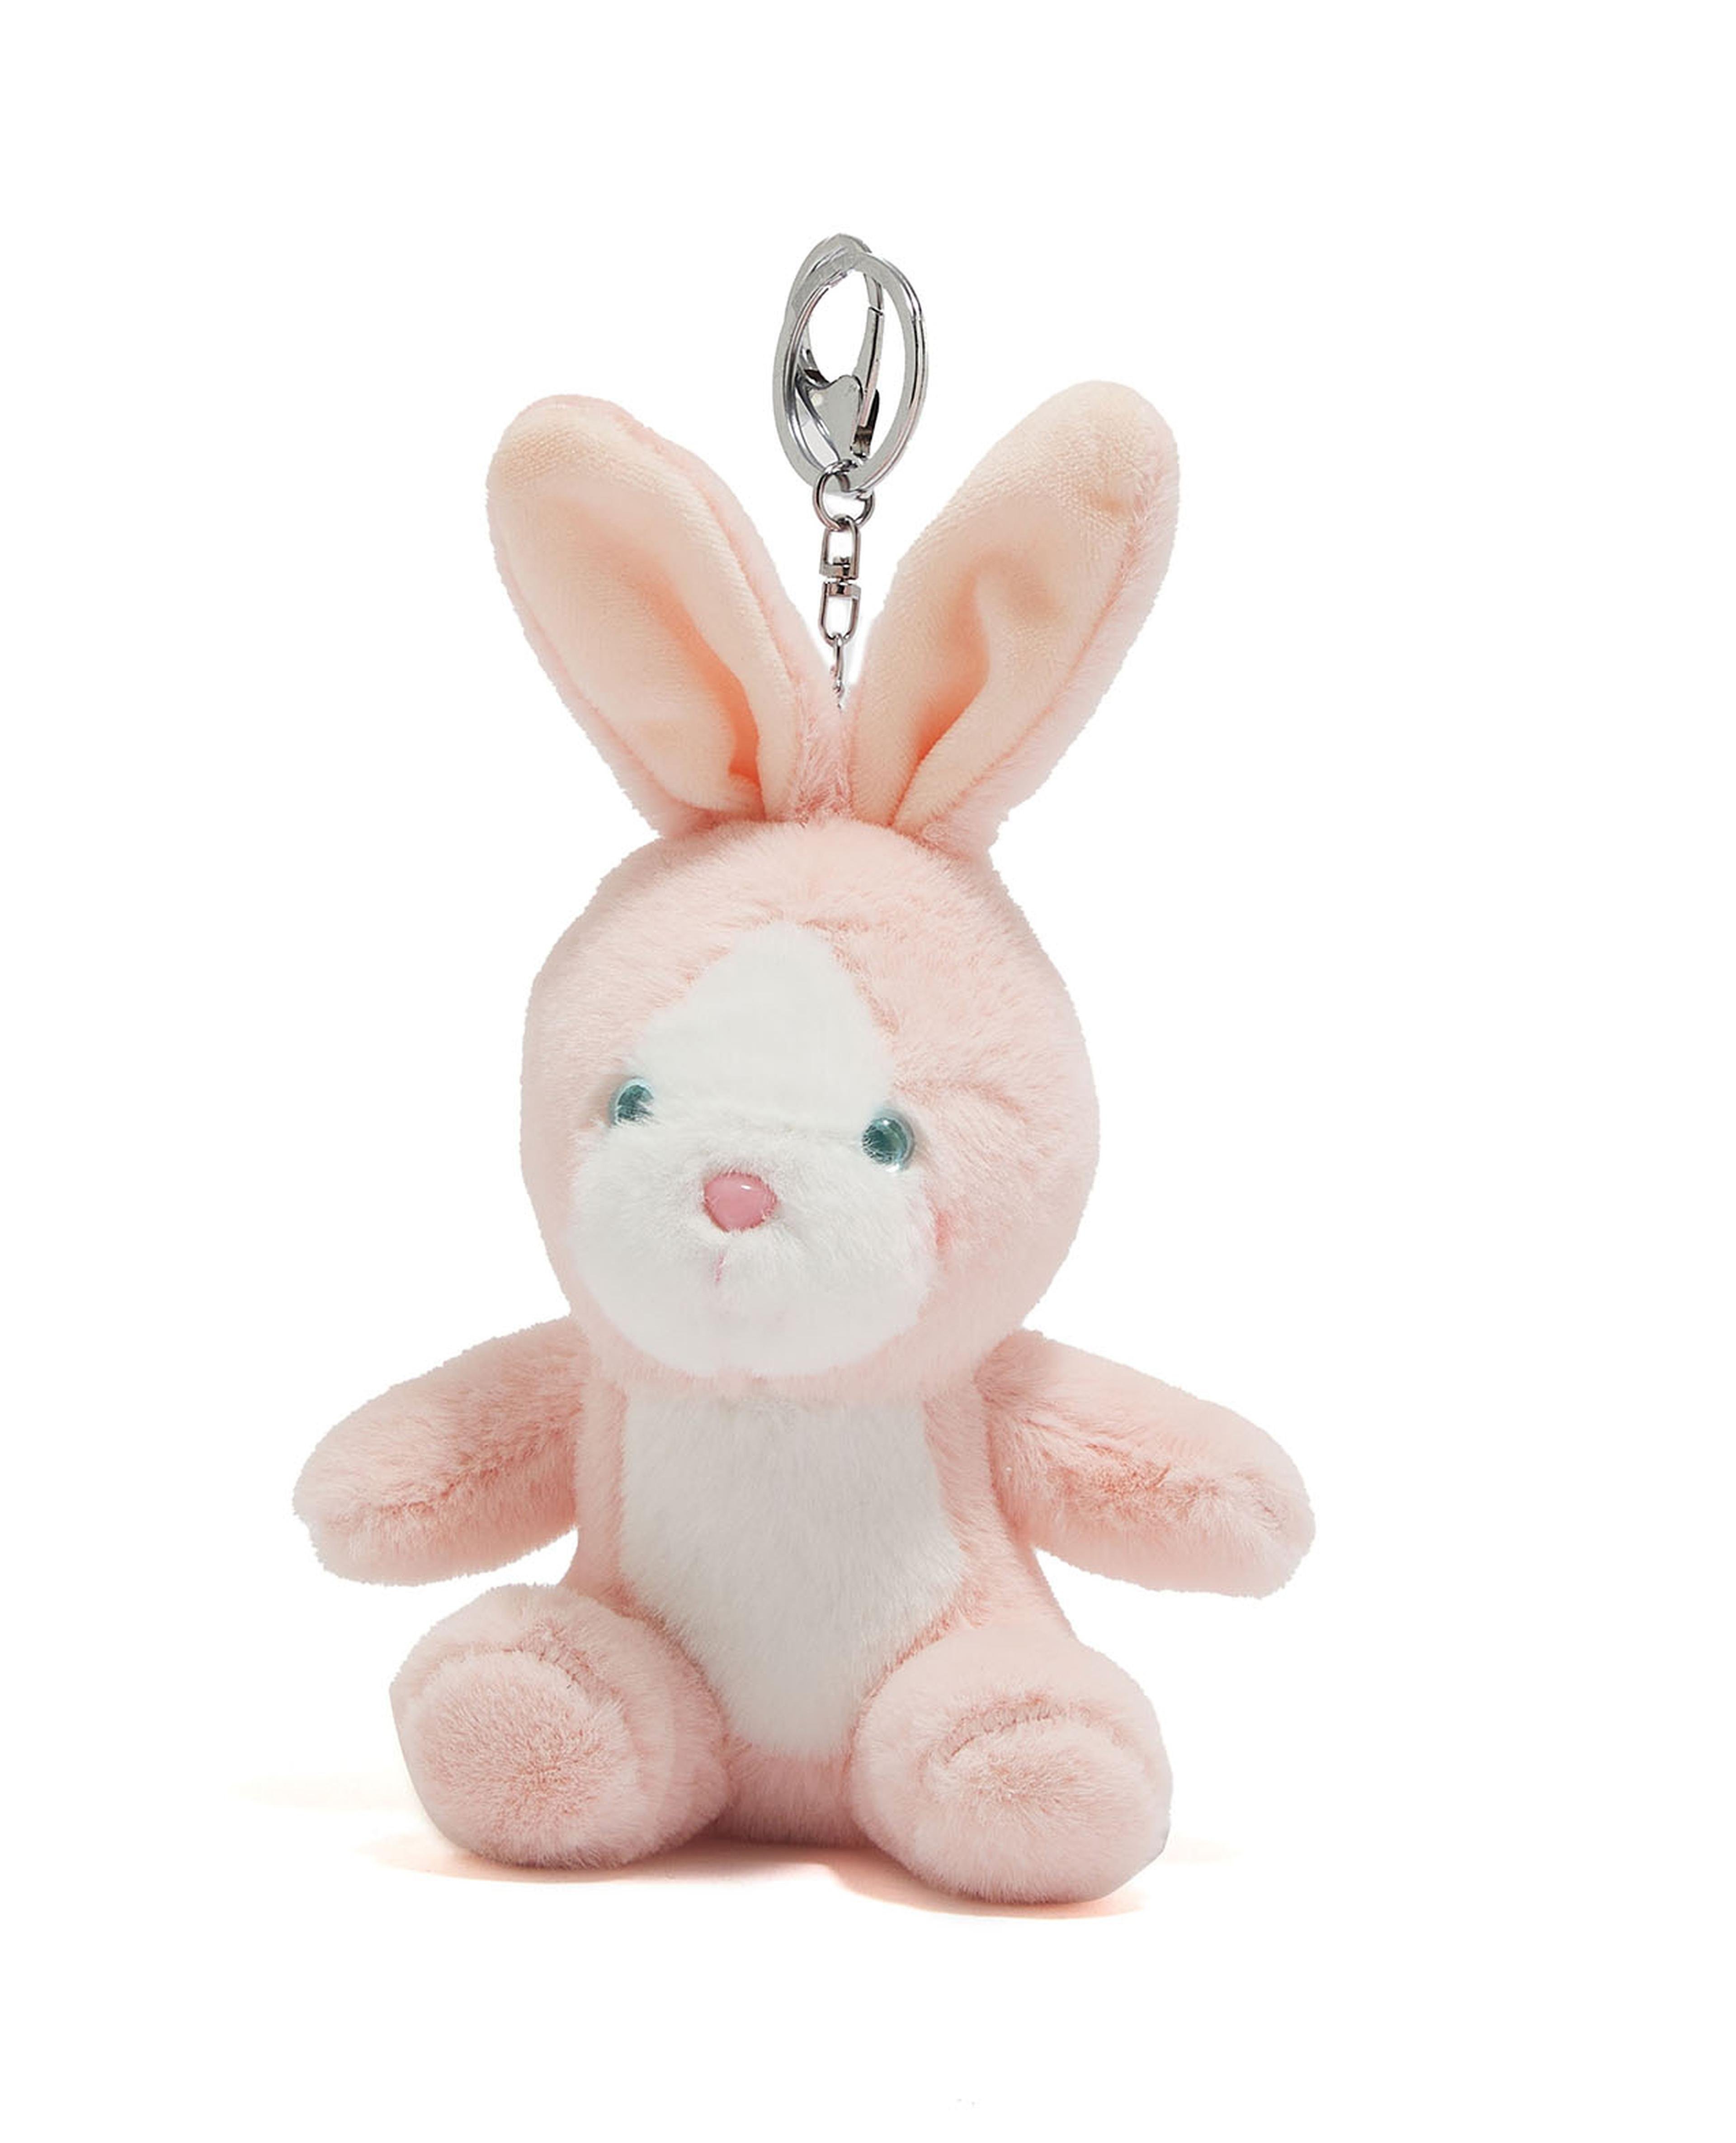 Rabbit Soft Toy Keychain